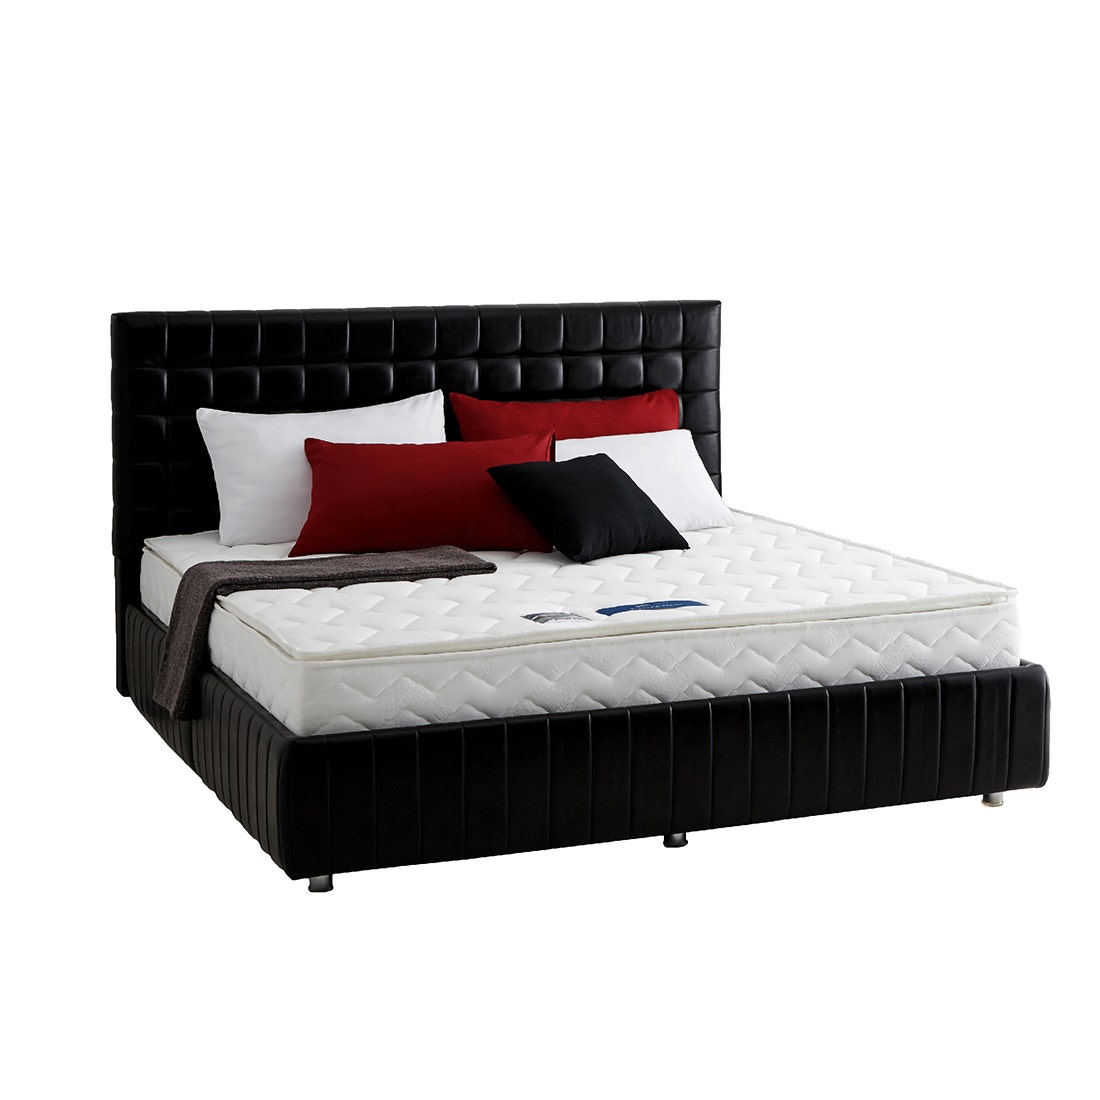 39004961-mattress-bedding-mattresses-foam-mattresses-06